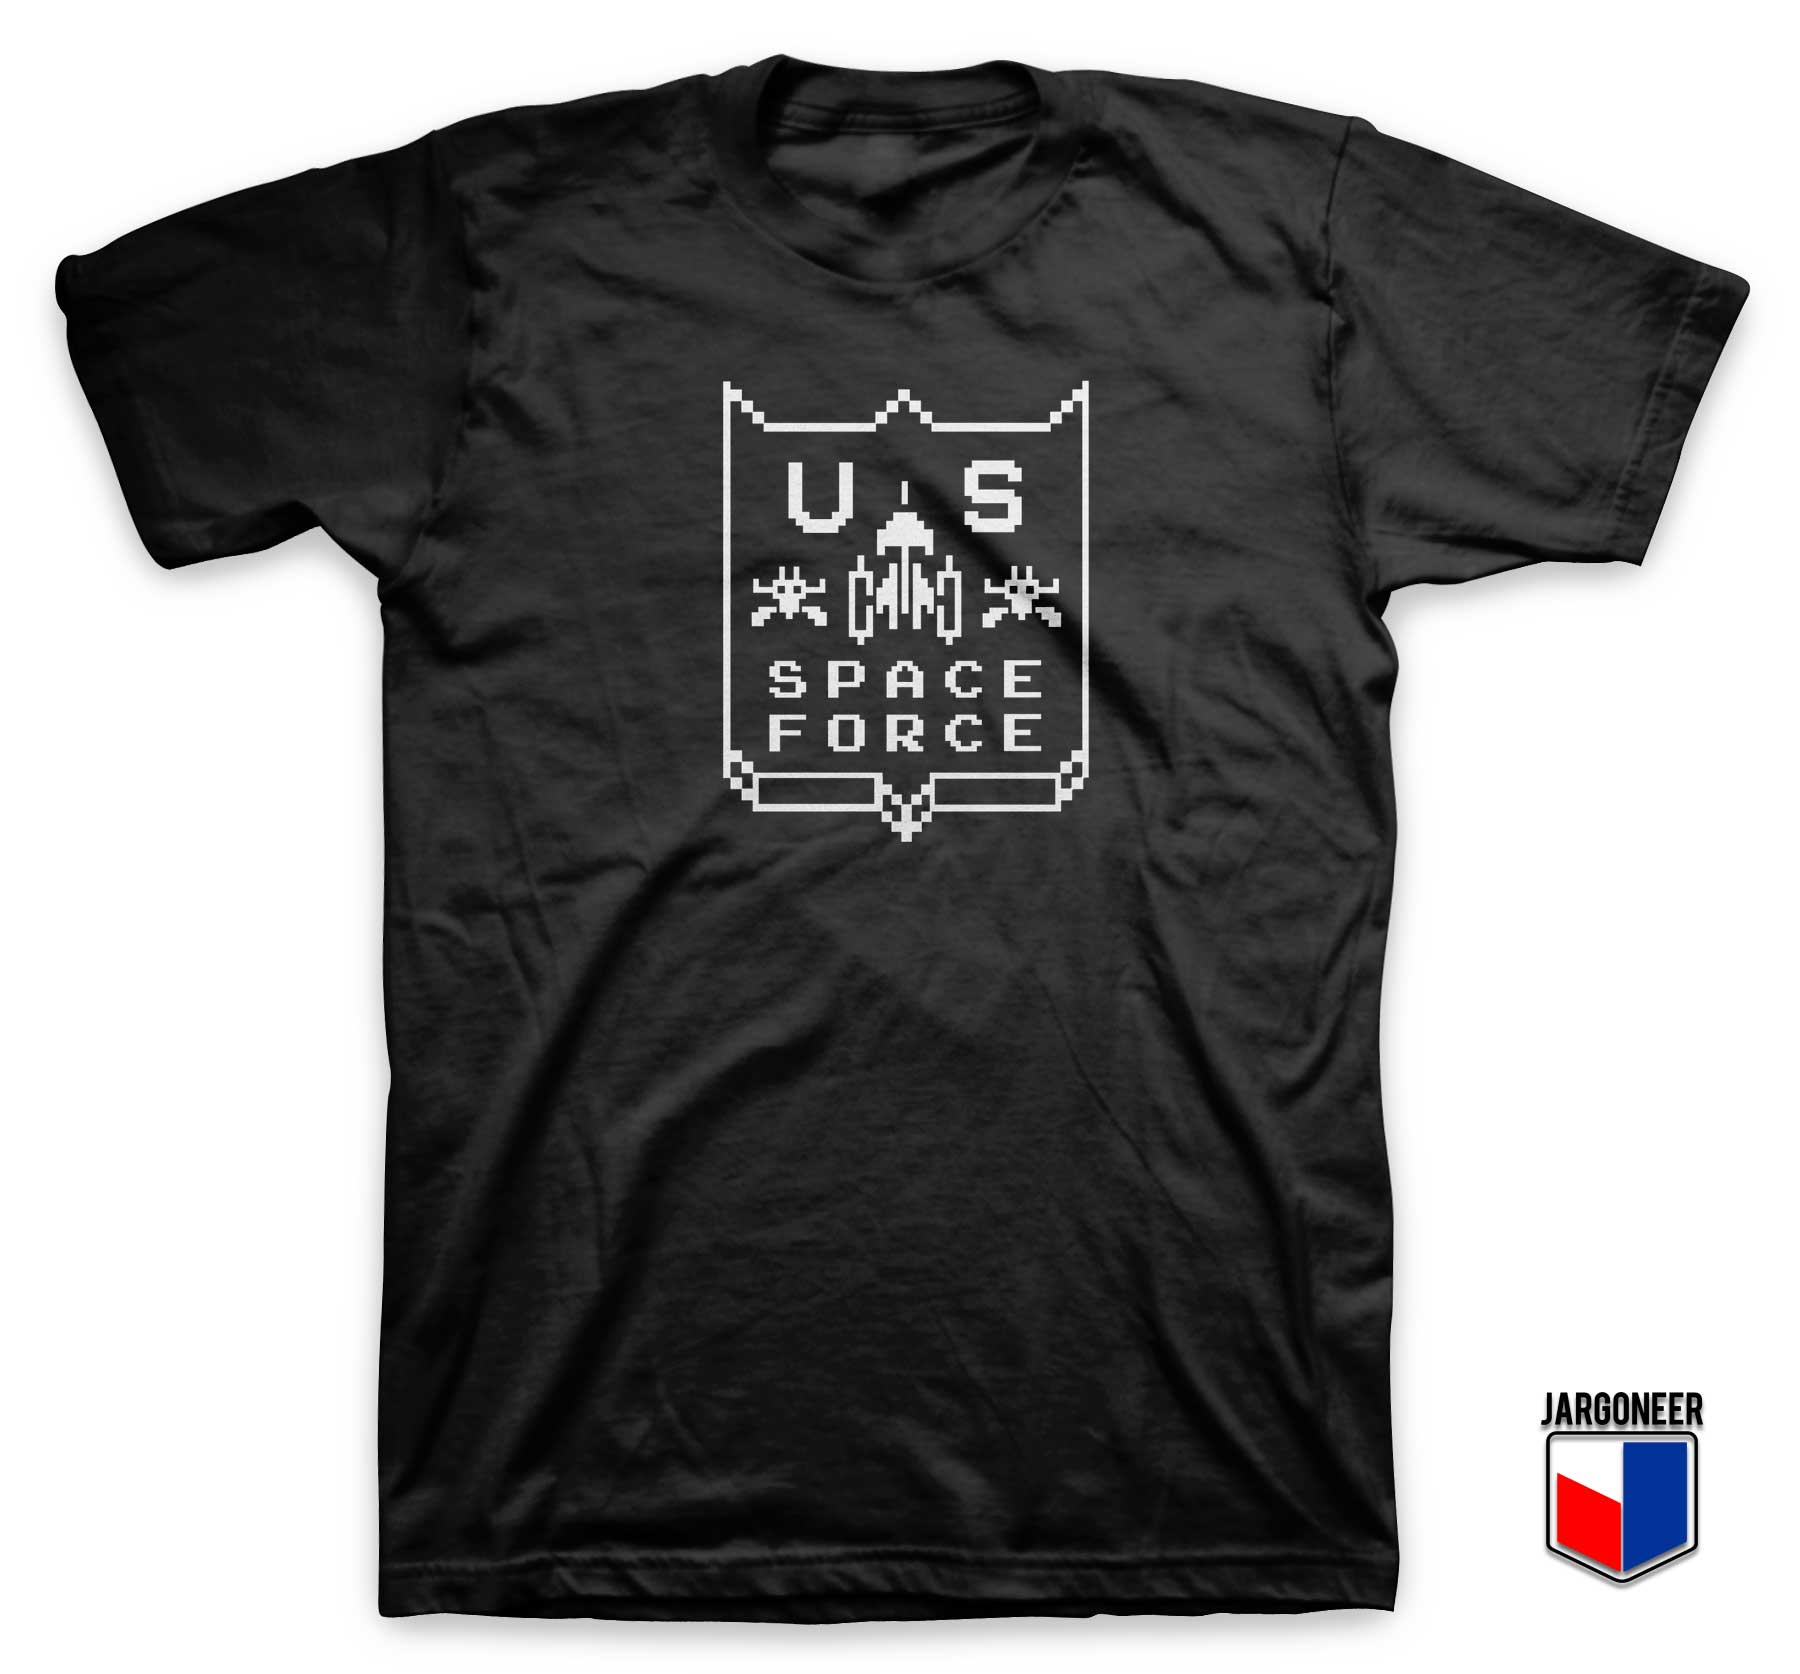 US Space Force T Shirt - Shop Unique Graphic Cool Shirt Designs